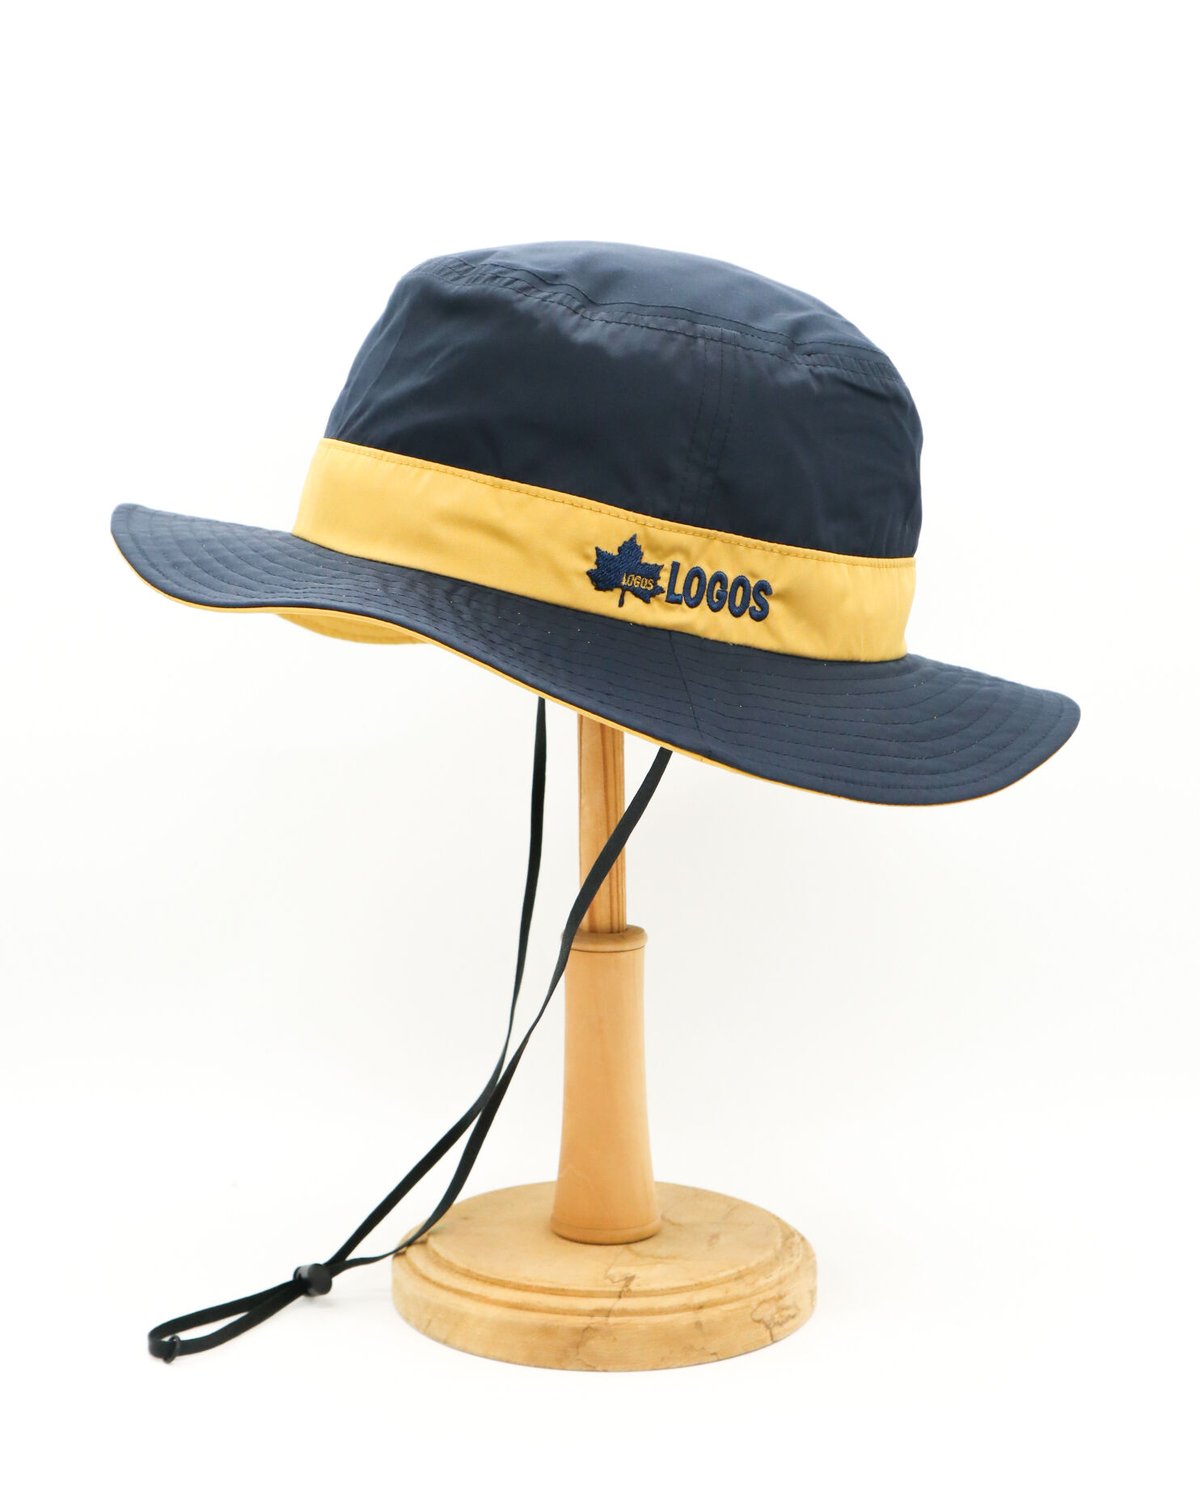 LOGOS” Bicolor Adventure Hat caniche shop